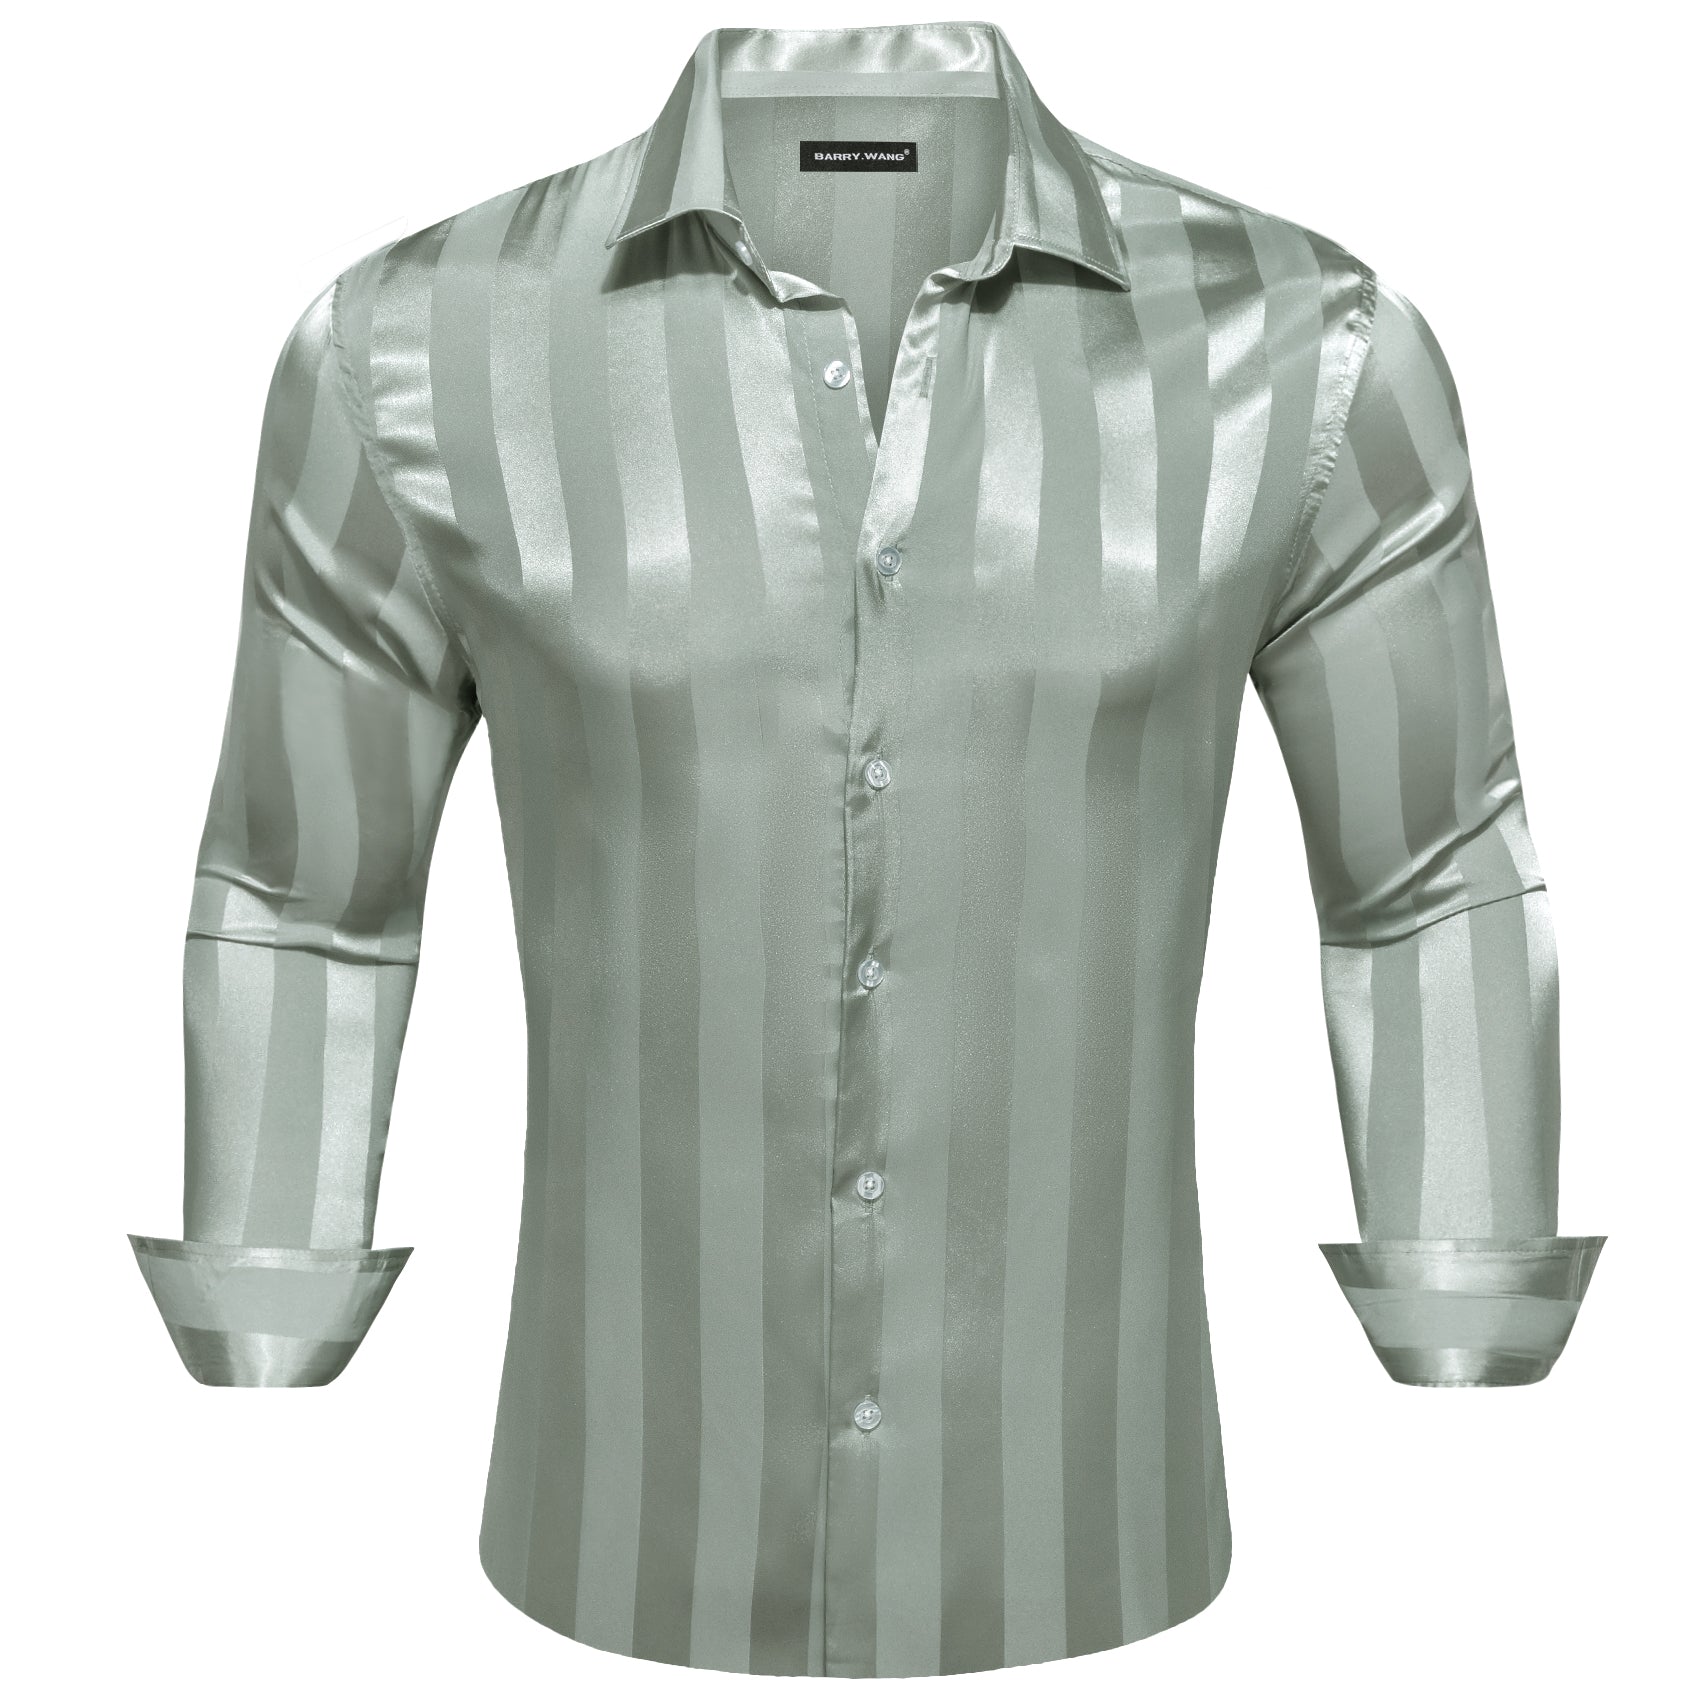 Barry.wang Darkseagreen Striped Silk Men's Shirt